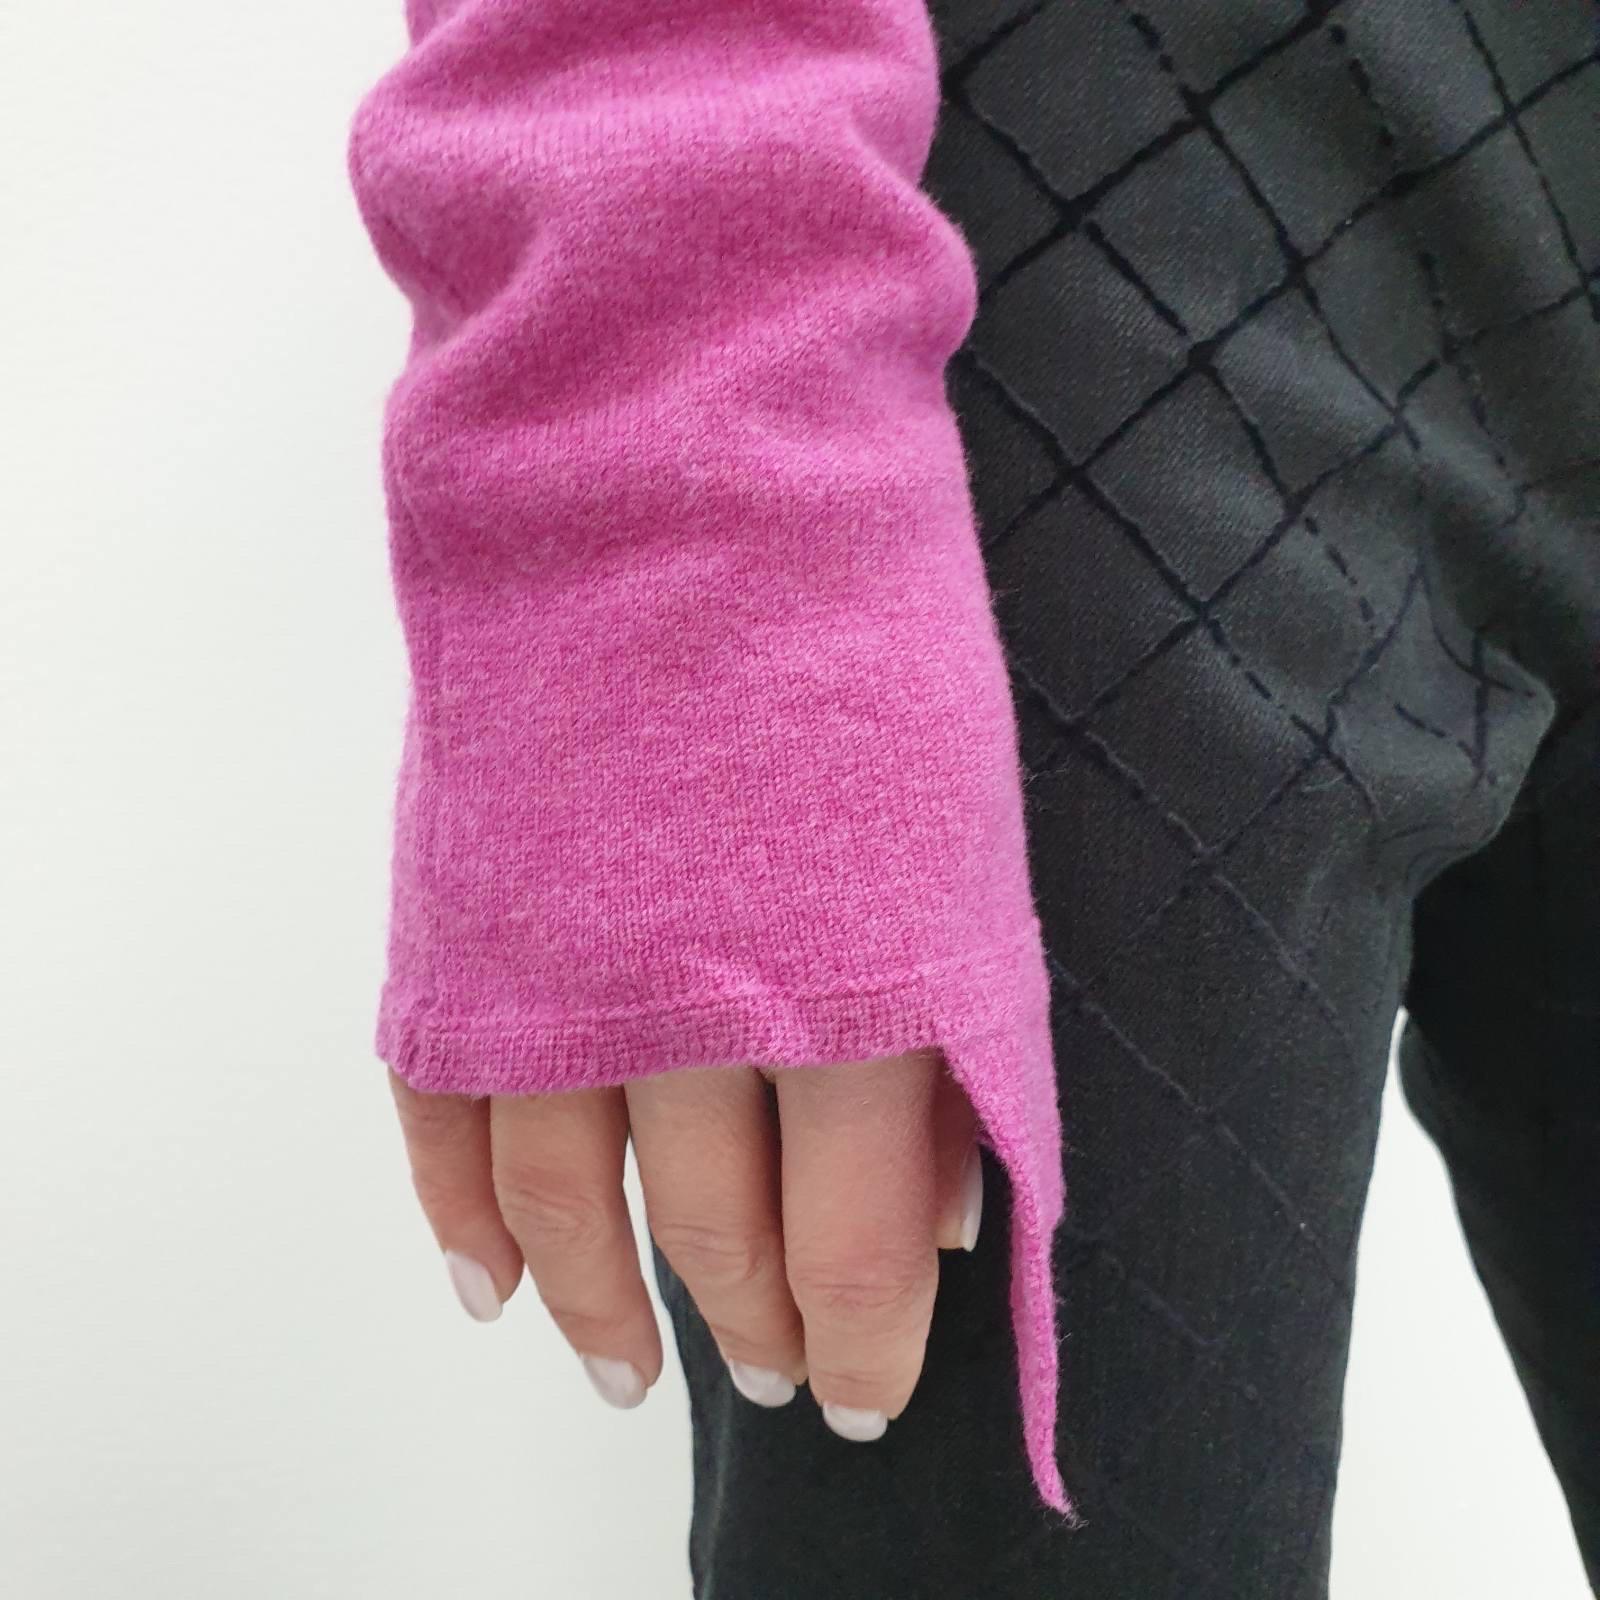 Der rosafarbene Wollpullover von Chanel fühlt sich beim Tragen fantastisch und luxuriös an. 
Es ist die Art von Kleidungsstück, die nie aus der Mode kommen wird. 
Der spitz zulaufende Kragen verleiht diesem Look ein französisches Flair. 
Dieser